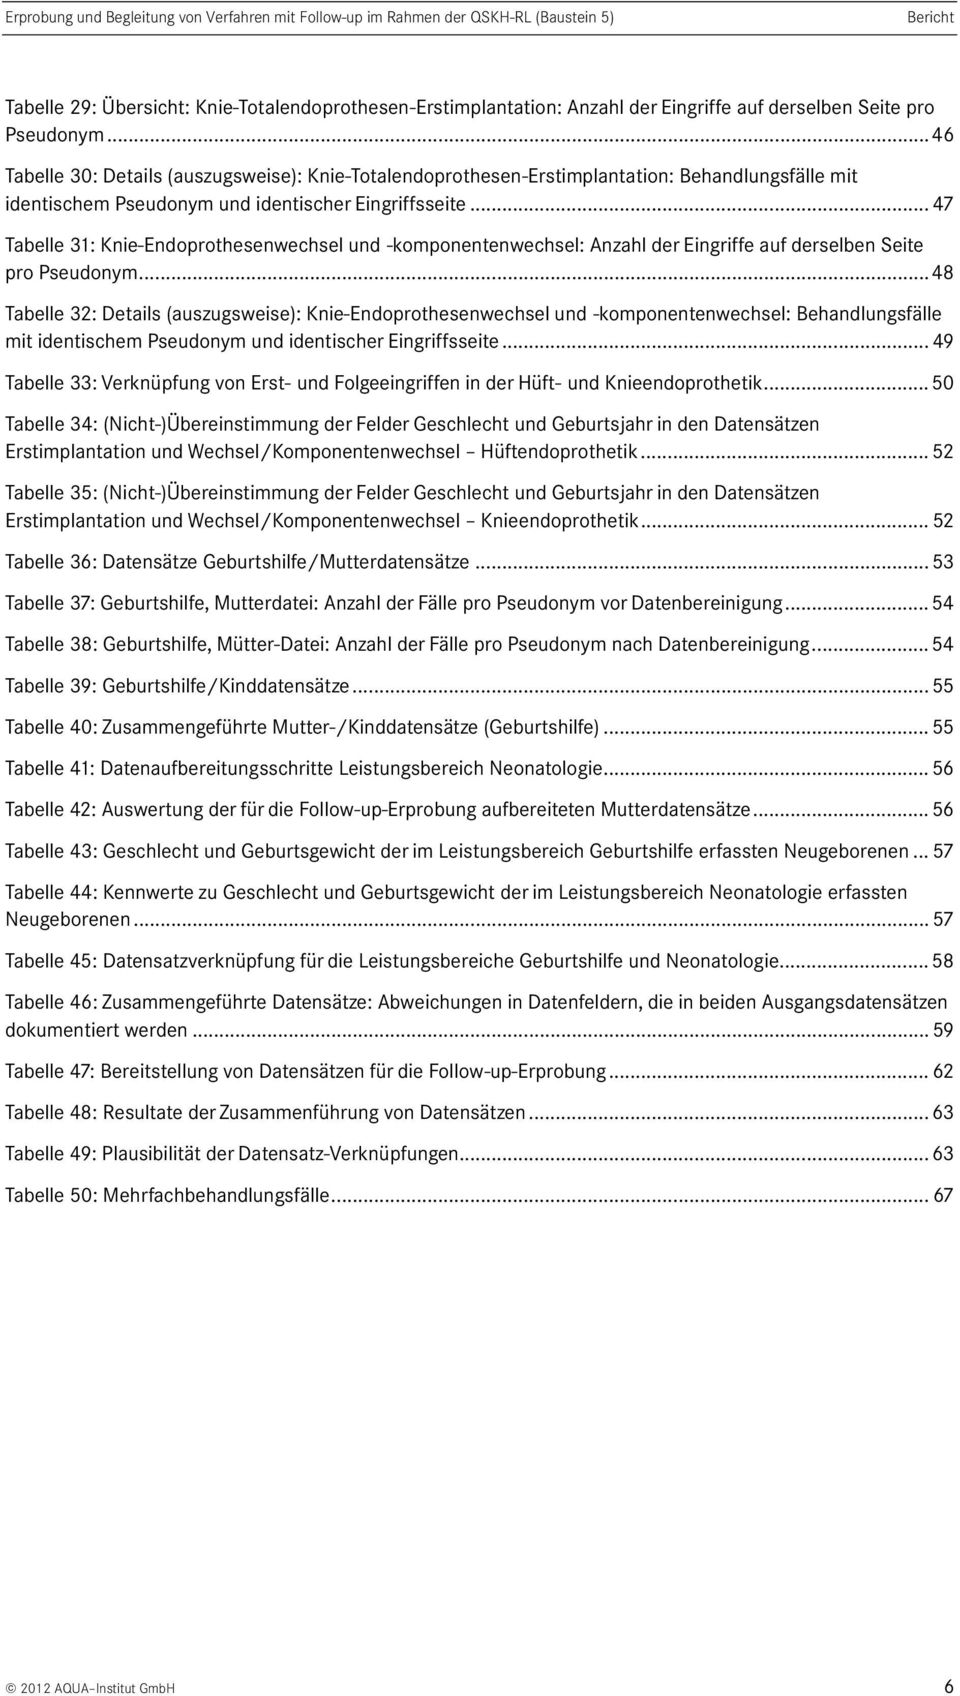 .. 47 Tabelle 3: Knie-Endoprothesenwechsel und -komponentenwechsel: Anzahl der Eingriffe auf derselben Seite pro Pseudonym.